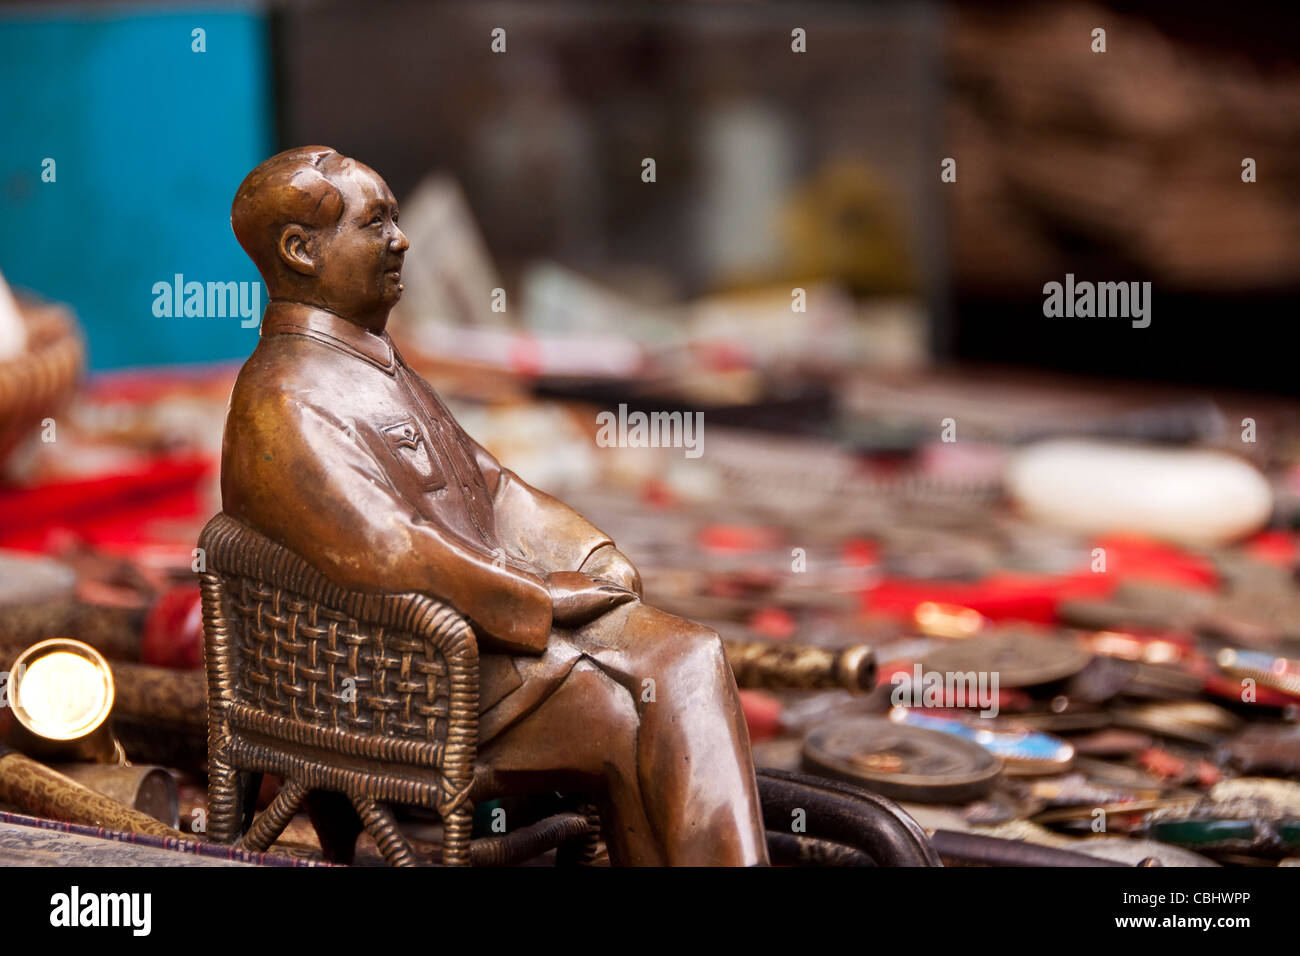 Statuette en bronze de Mao dans un marché d'antiquités chinoises Banque D'Images